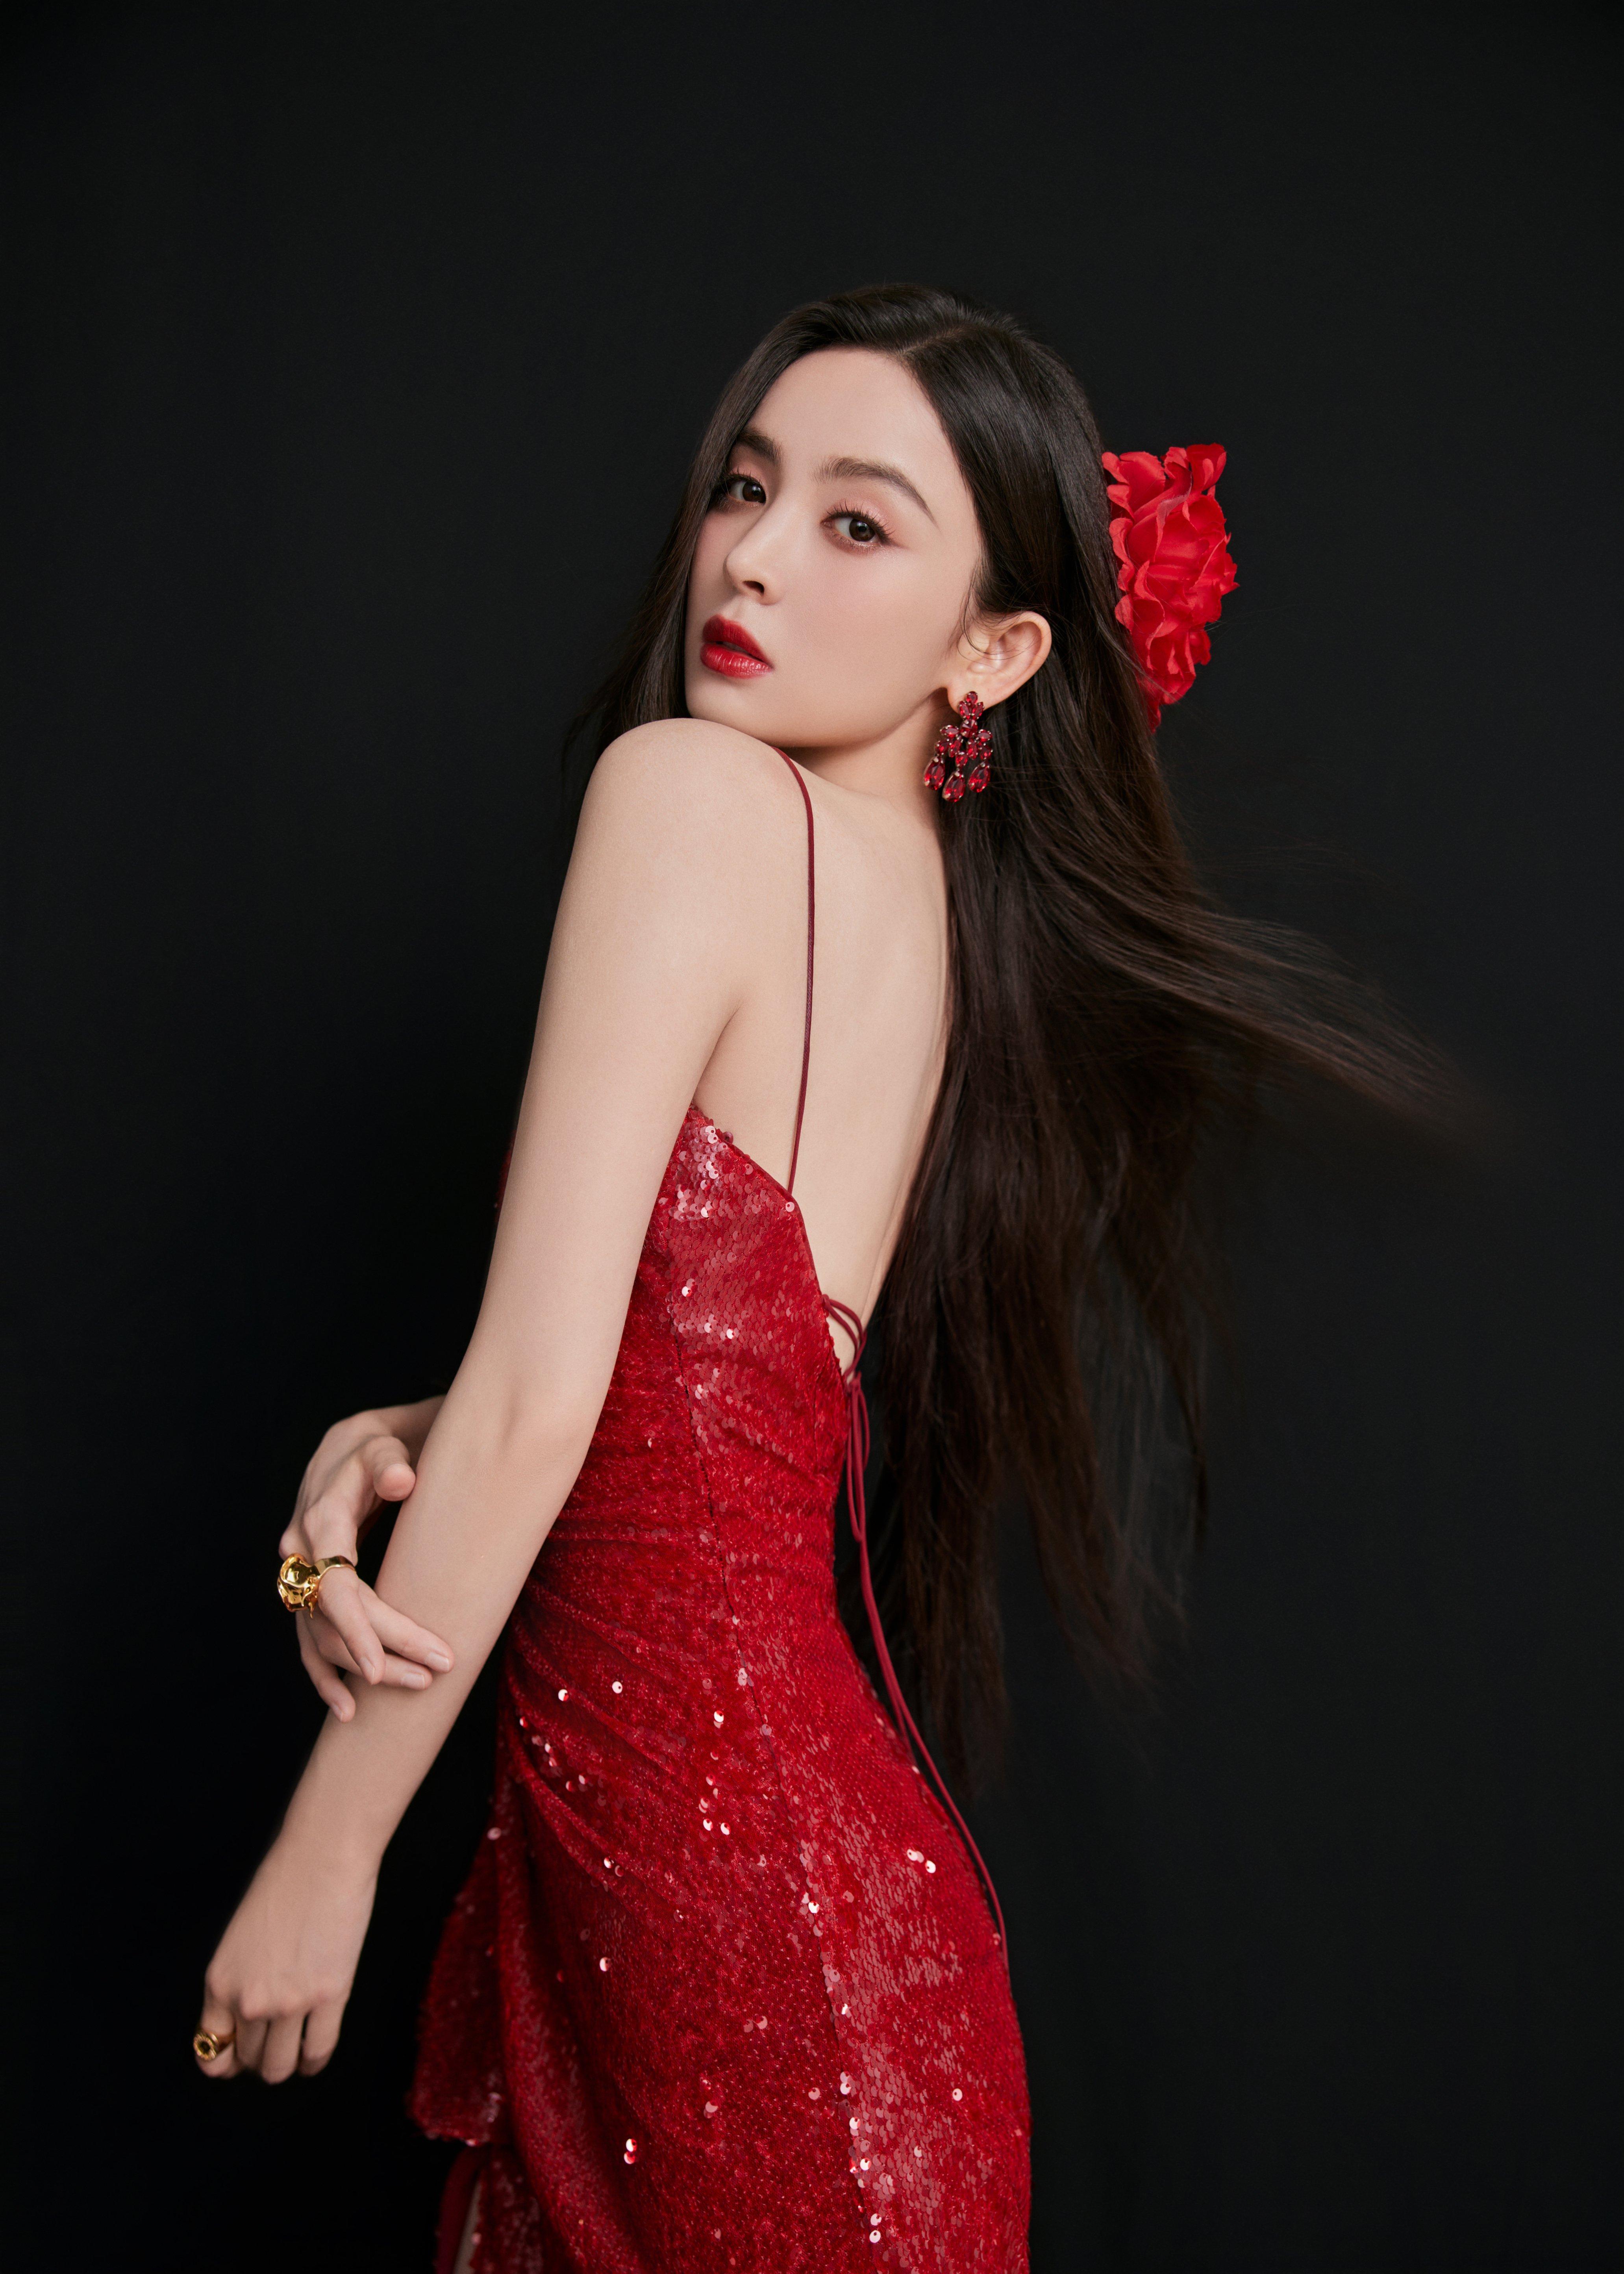 古力娜扎美照送达 红色吊带裸背礼服裙如明艳的红玫瑰,1 (4)